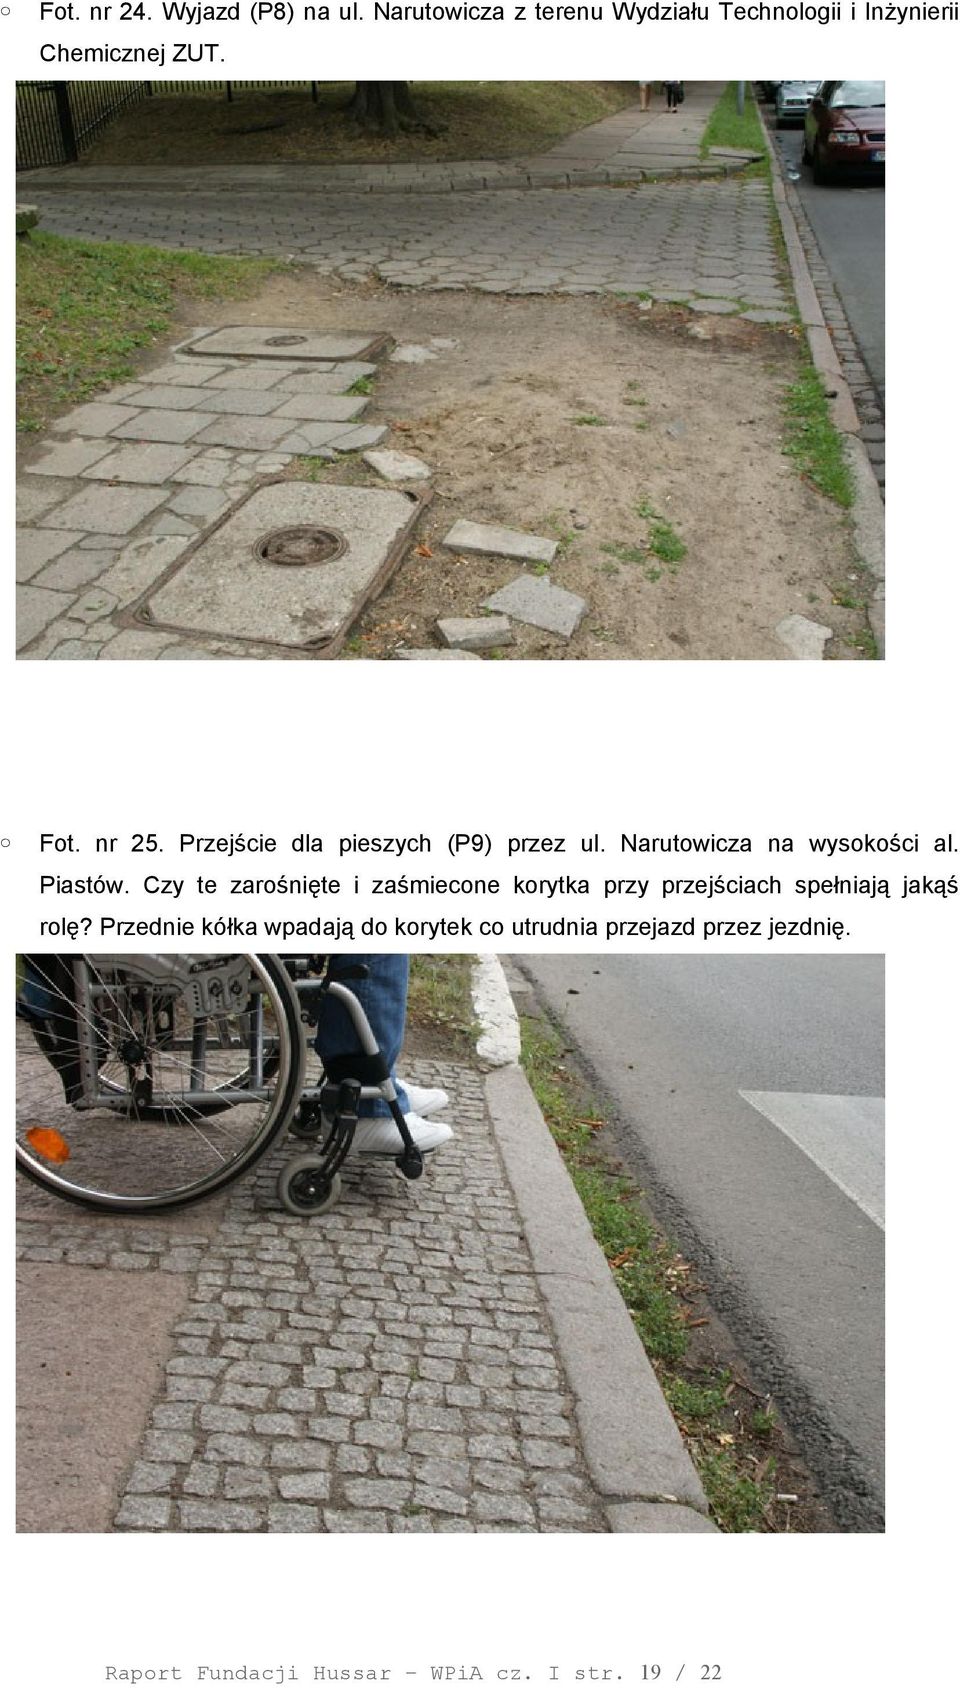 Przejście dla pieszych (P9) przez ul. Narutowicza na wysokości al. Piastów.